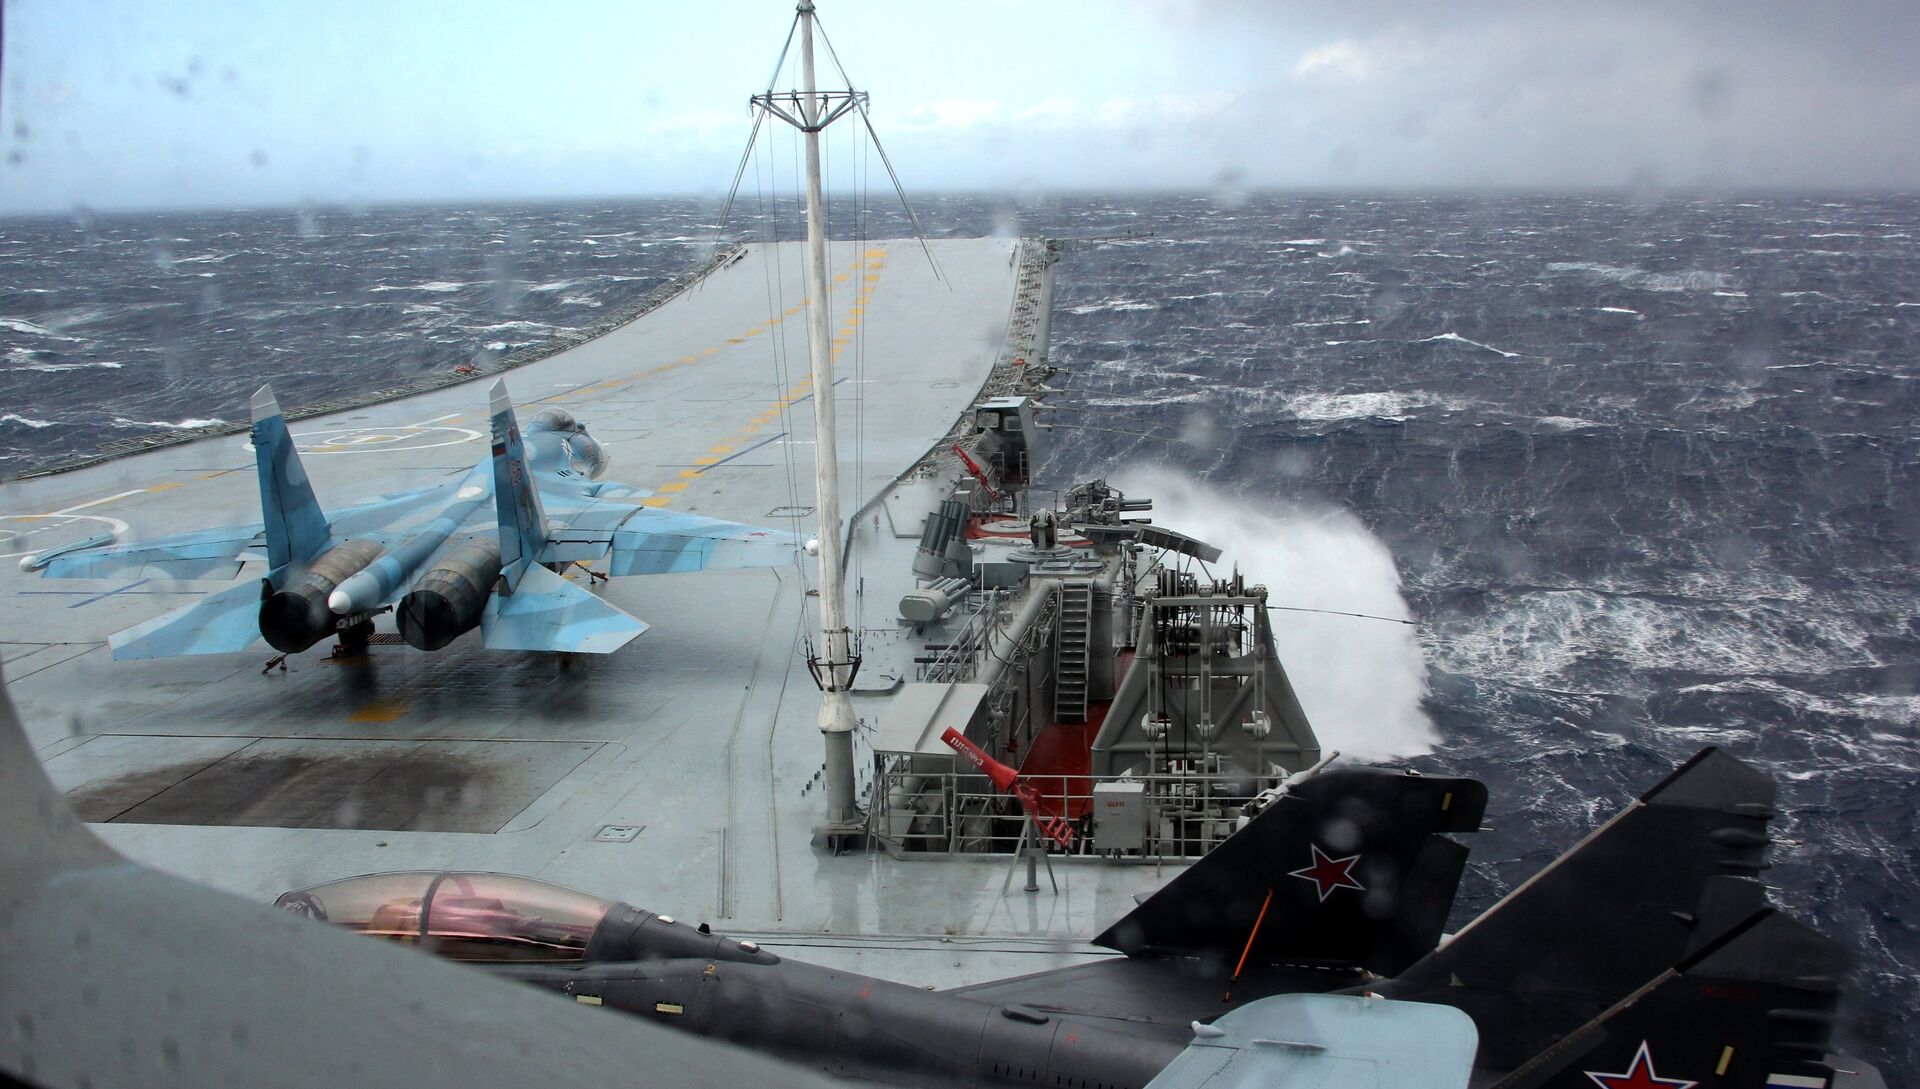 Истребитель МиГ-29К на палубе тяжелого авианесущего крейсера Адмирал Кузнецов в Средиземном море - РИА Новости, 1920, 21.11.2017